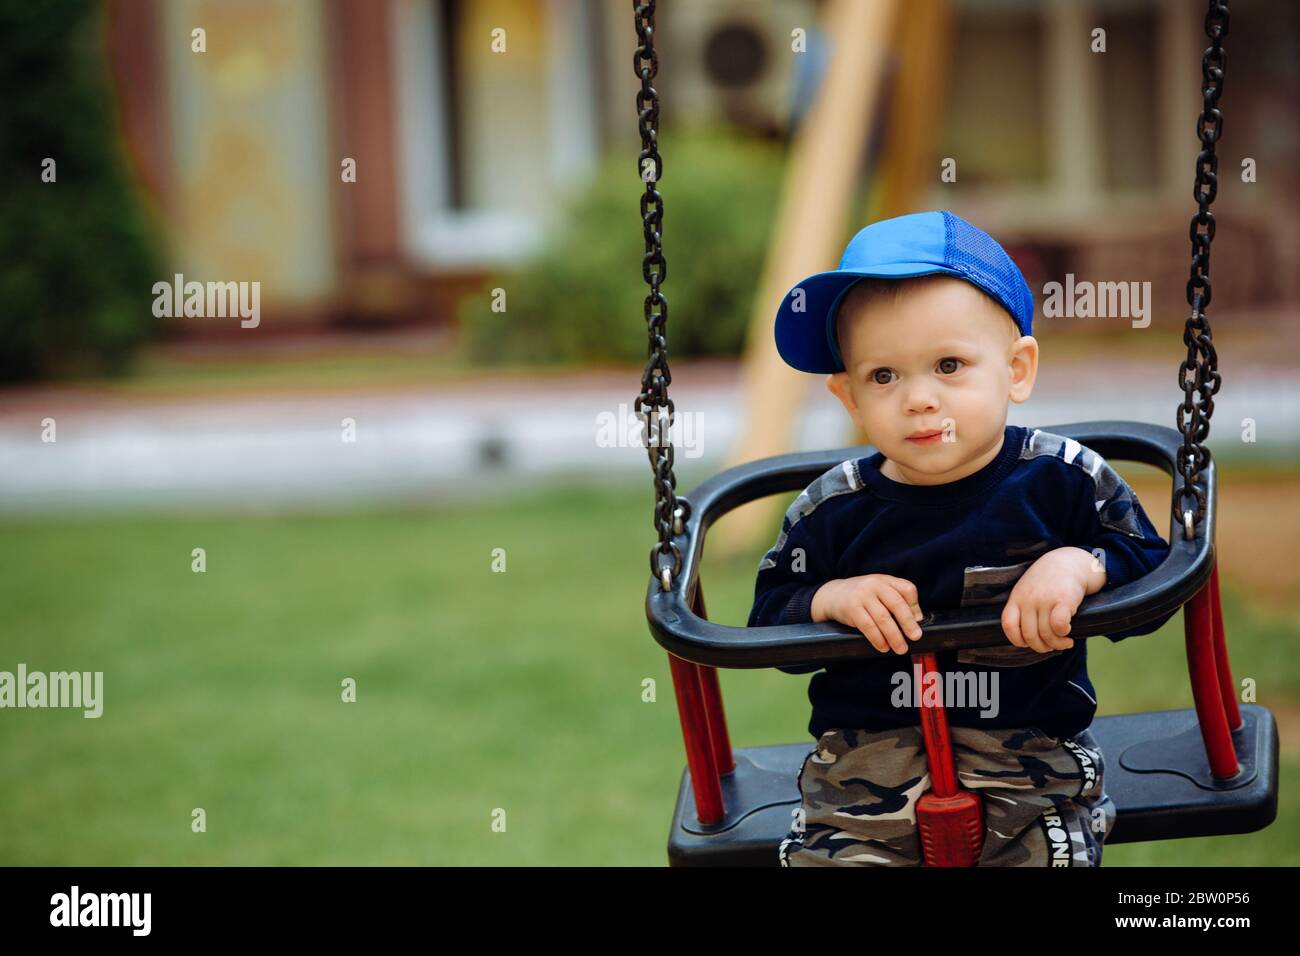 Schöner Junge 1-2 Jahre alt, auf einer Schaukel, Spielplatz, Nahaufnahme Stockfoto